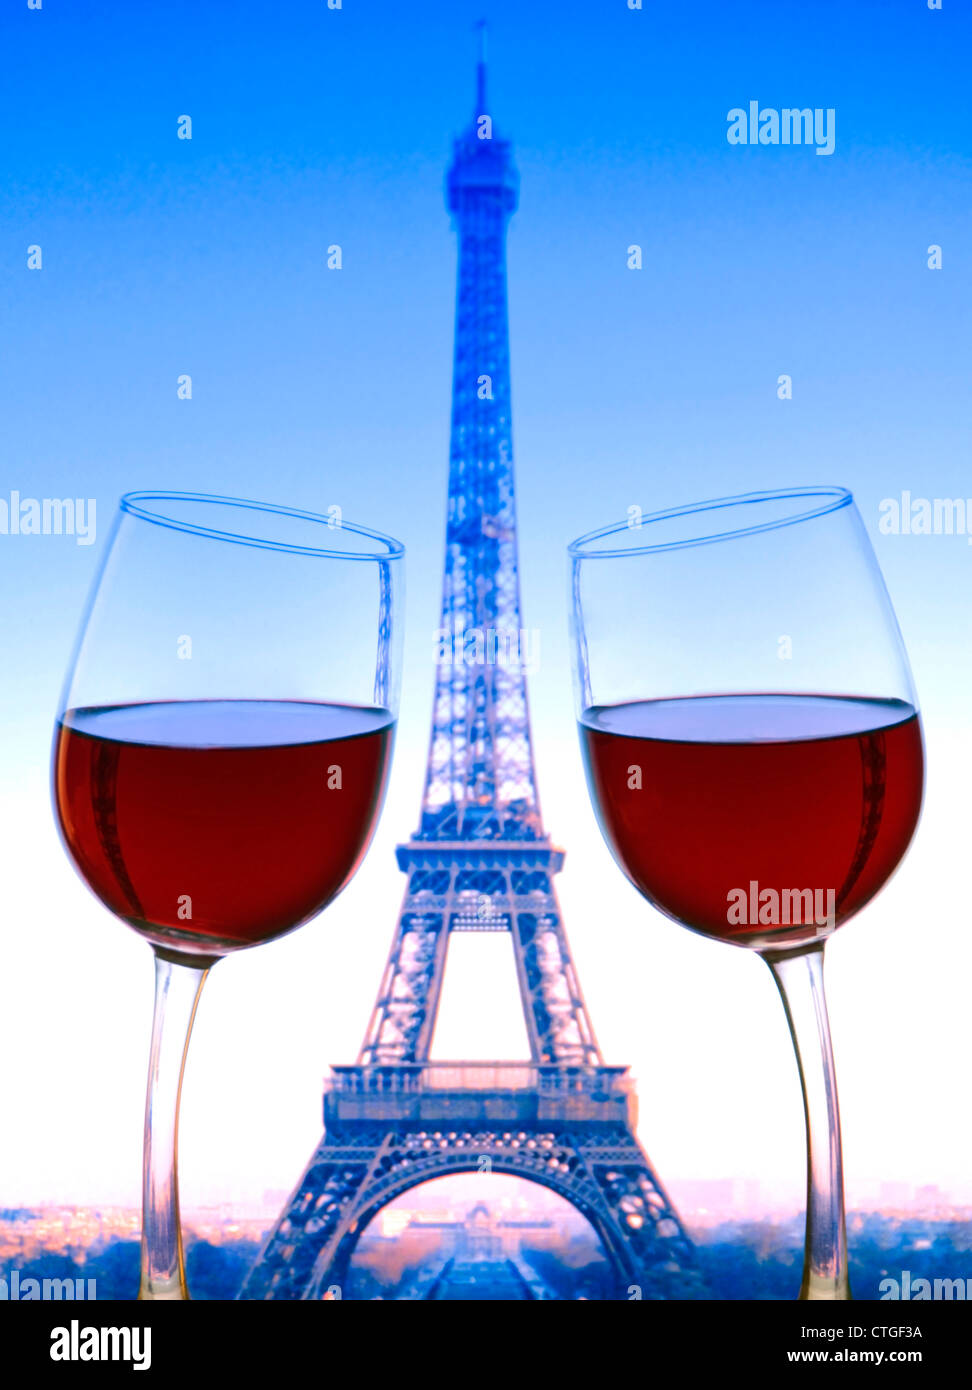 PARIS CHEERS FUN Rotweingläser lehnen sich in „Cheers“ mit Eiffelturm hinter Paris France aufeinander. Französische Tricolor Flag Farben Stockfoto